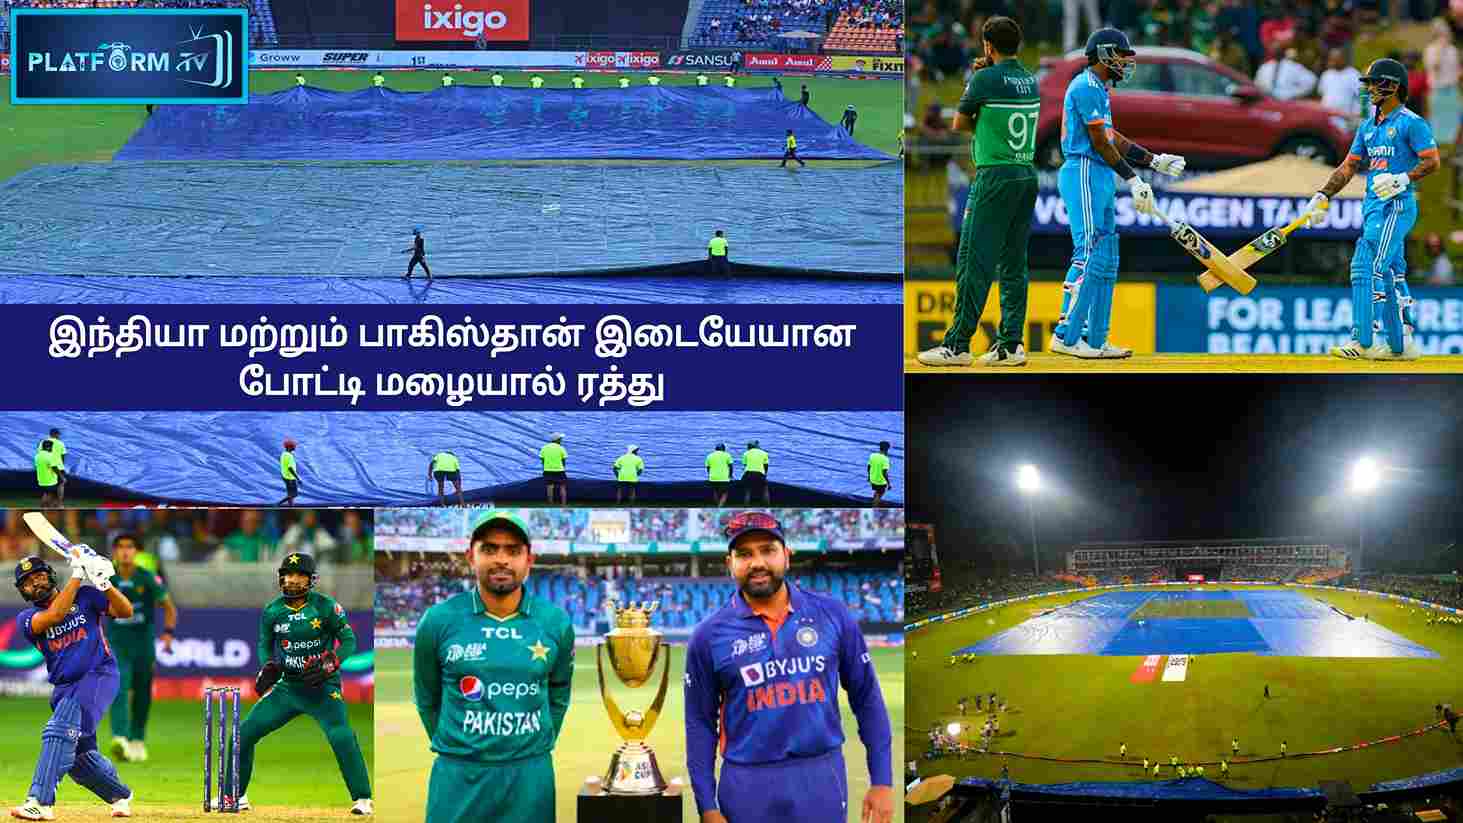 IND vs PAK Match Cancelled - Platform Tamil